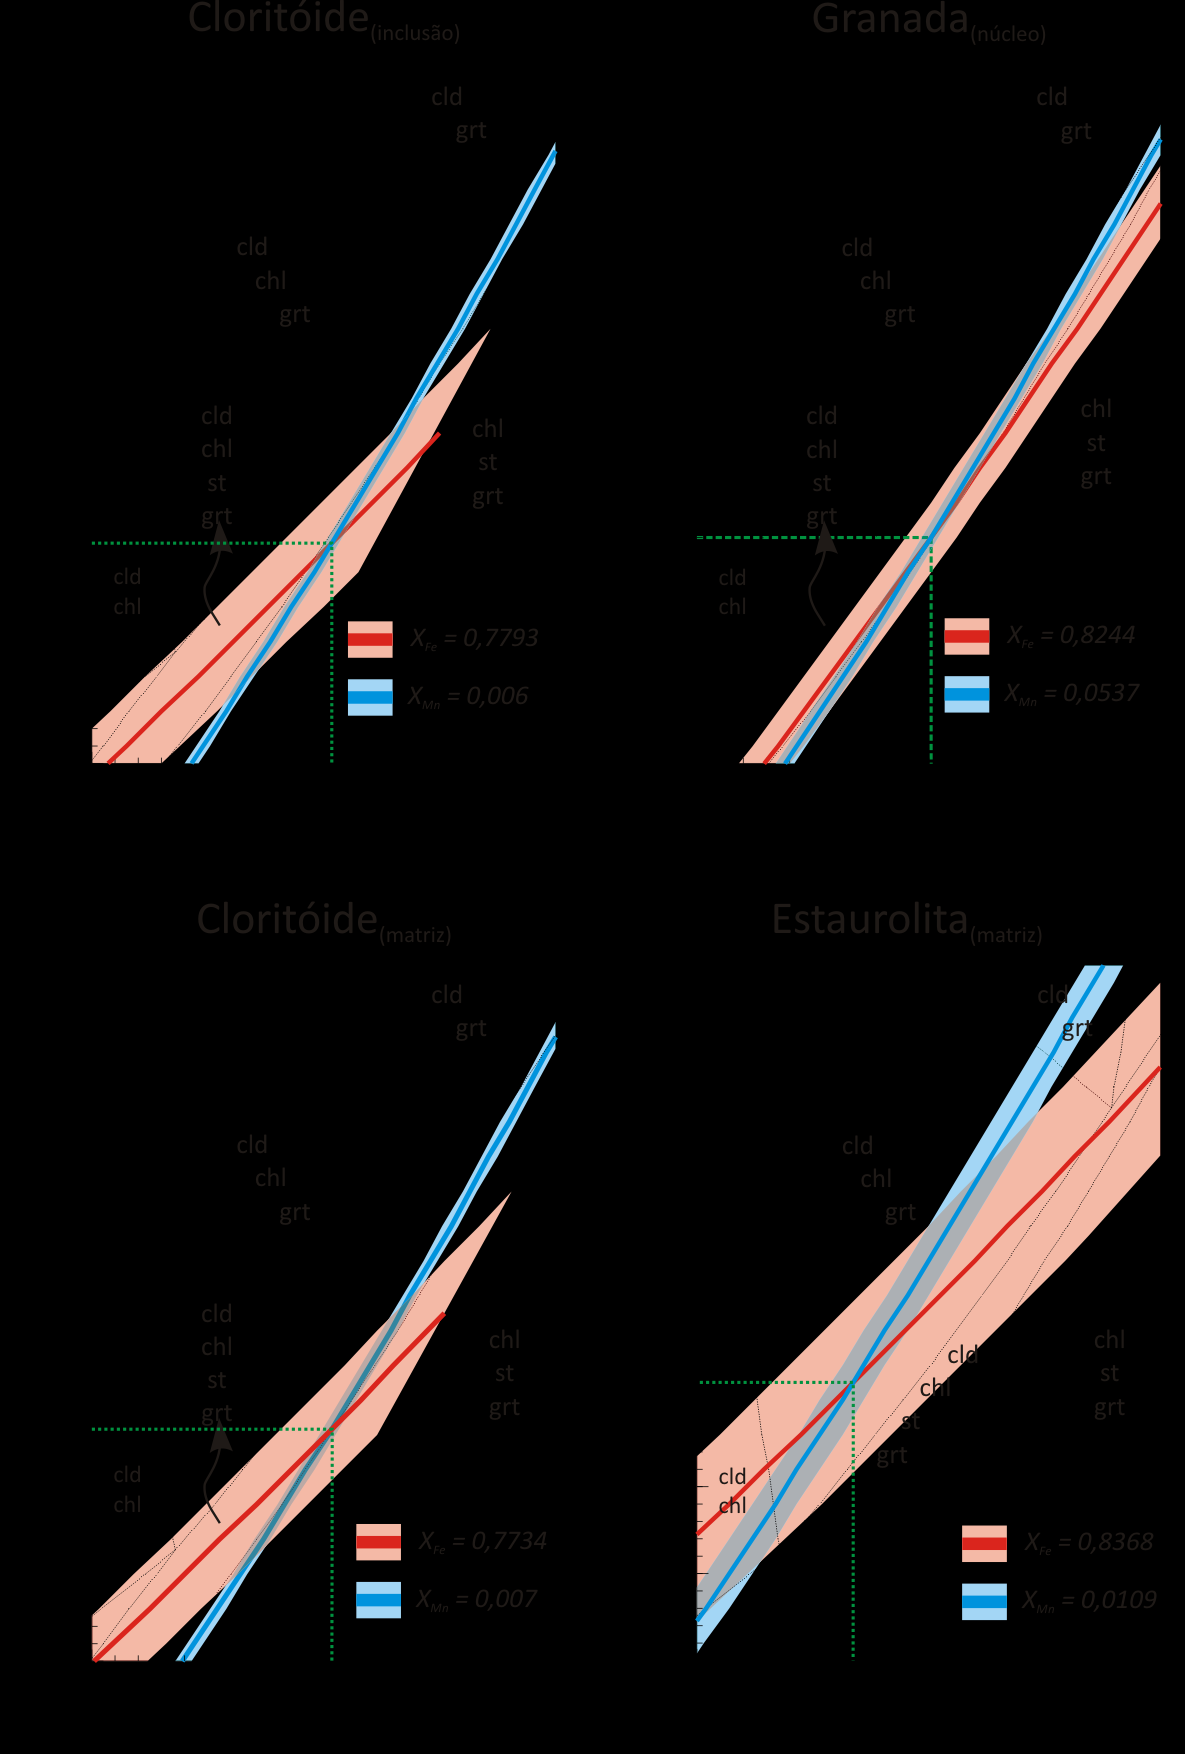 análises do centro e borda dos minerais posicionam-se no campo clorita-granadaestaurolita, que não representa o pico metamórfico.